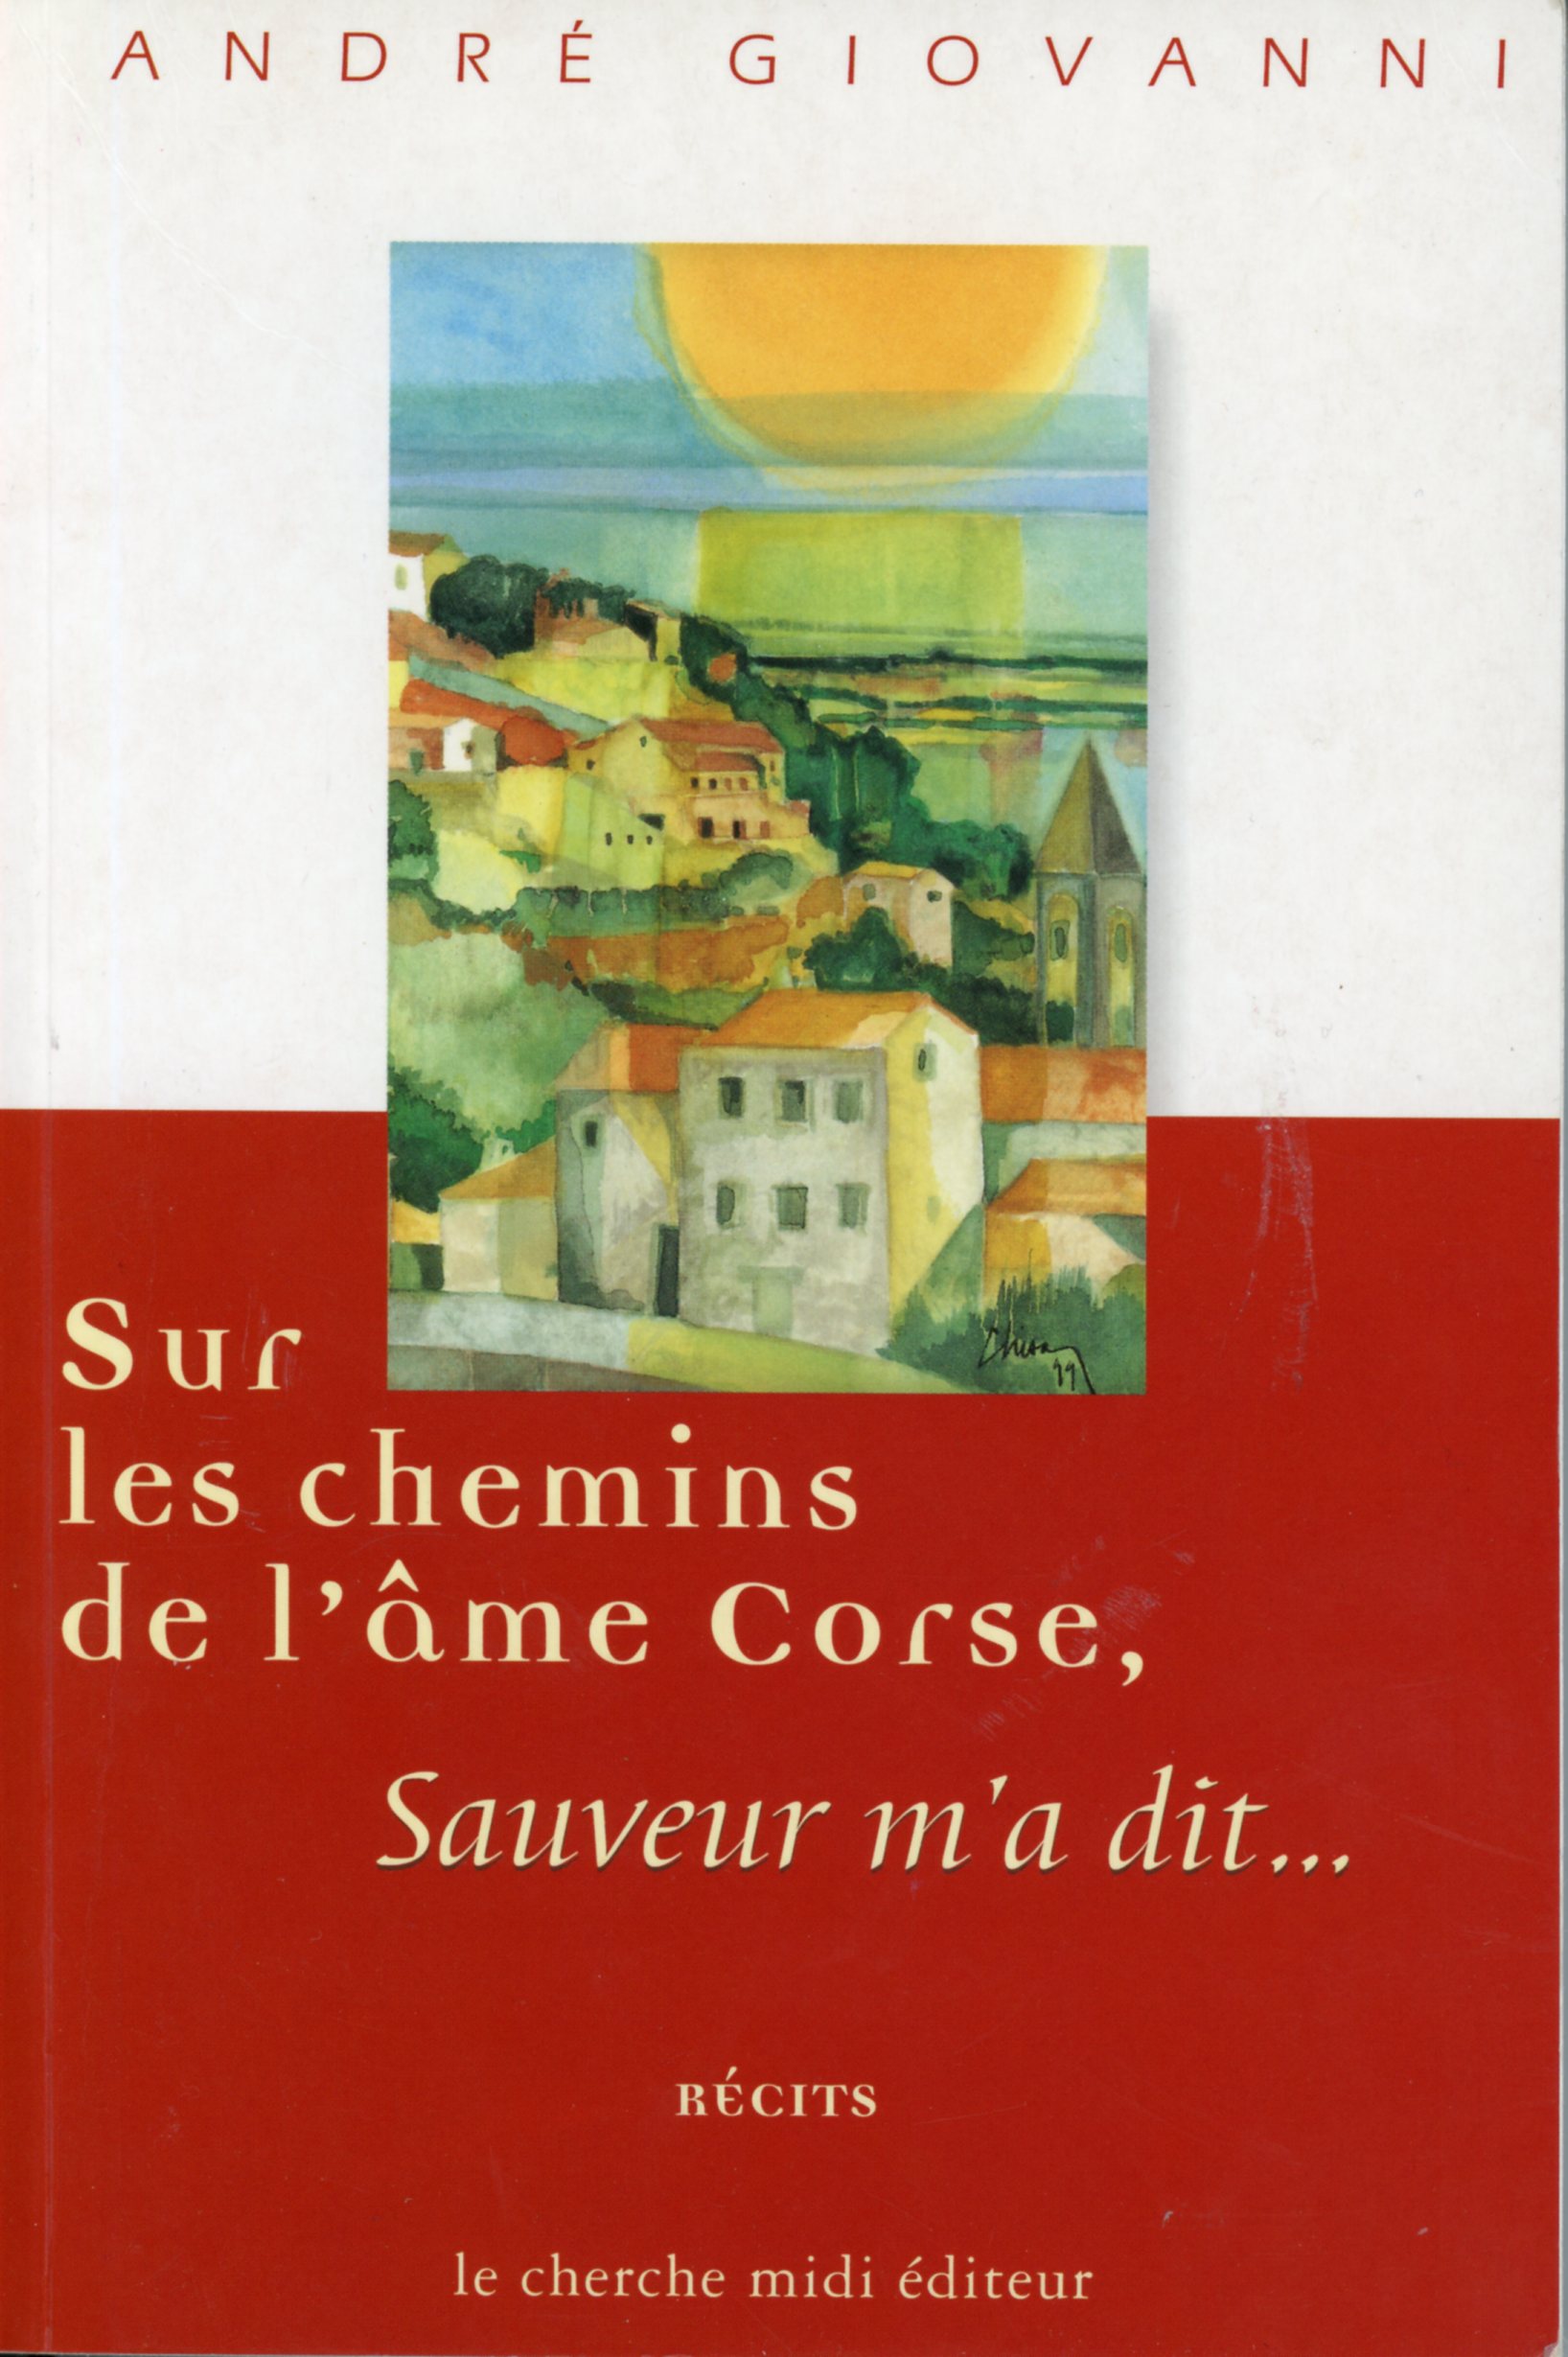 SUR LES CHEMINS DE L'AME CORSE-RÉCITS-GIOVANNI-9782862747125-LEMASTERBROCKERS